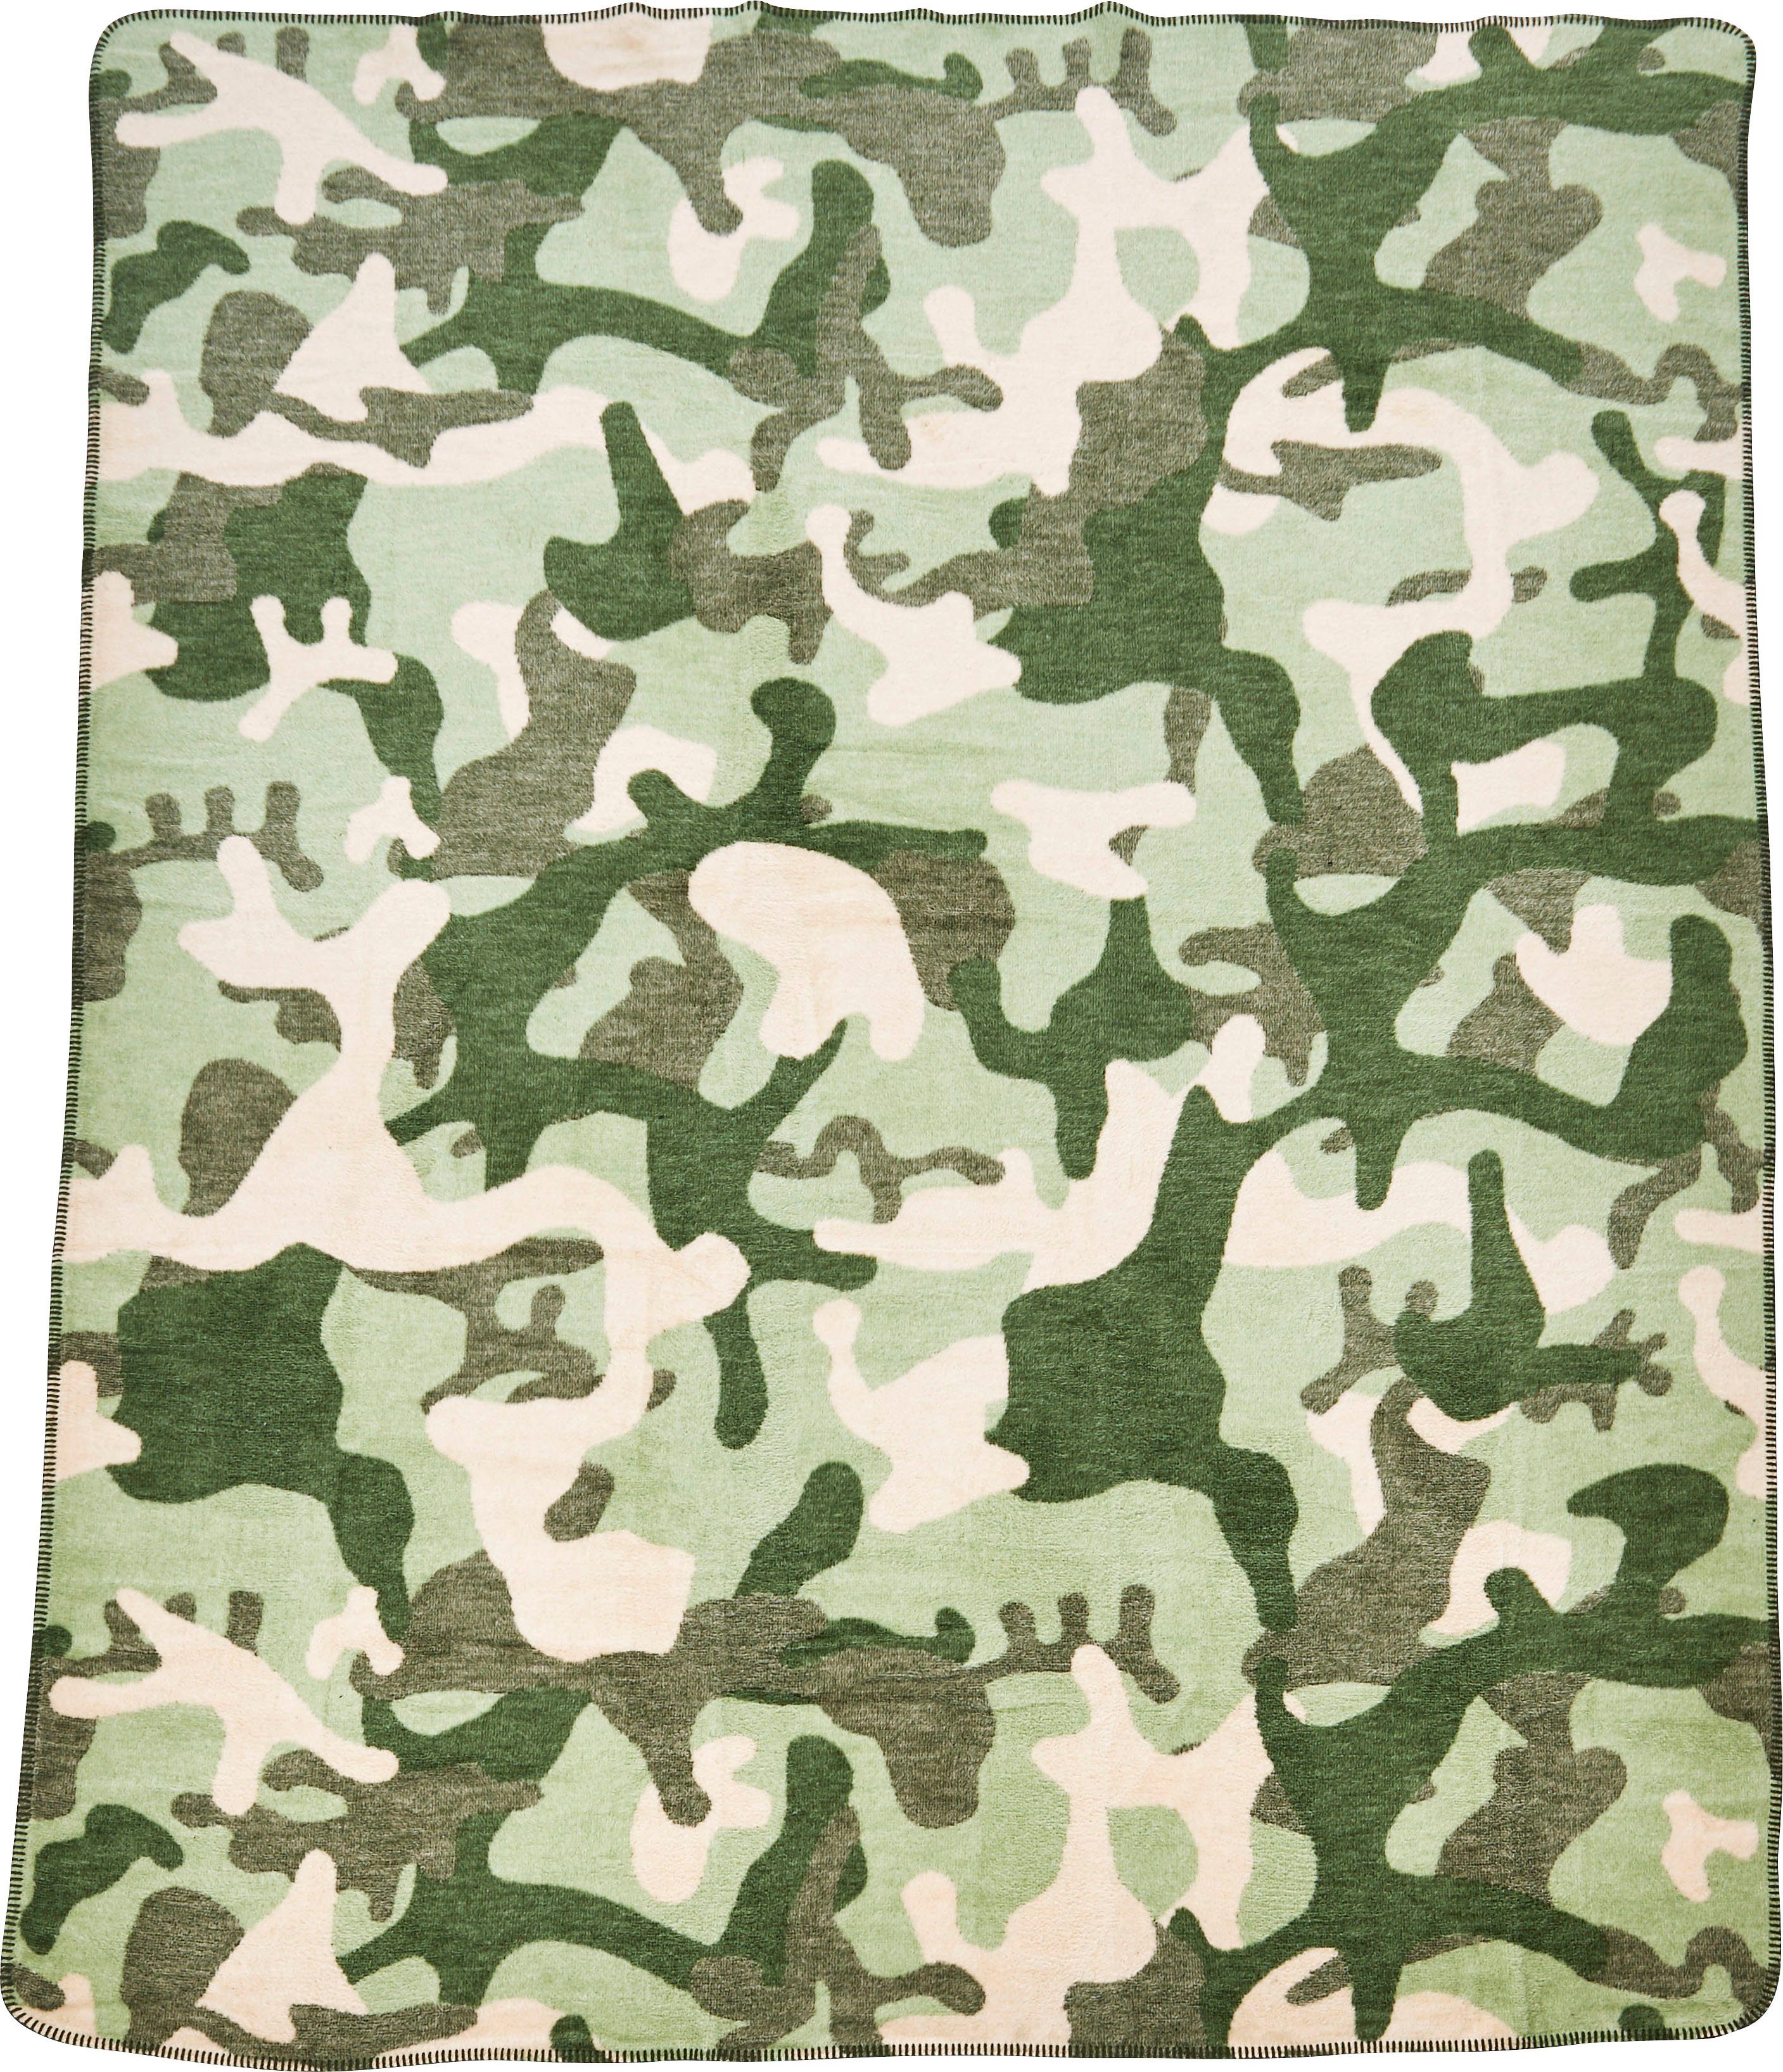 Wohndecke Camouflage, done.®, Wohndecke Kuscheldecke einfassender Ziernaht, mit khaki/grün/beige